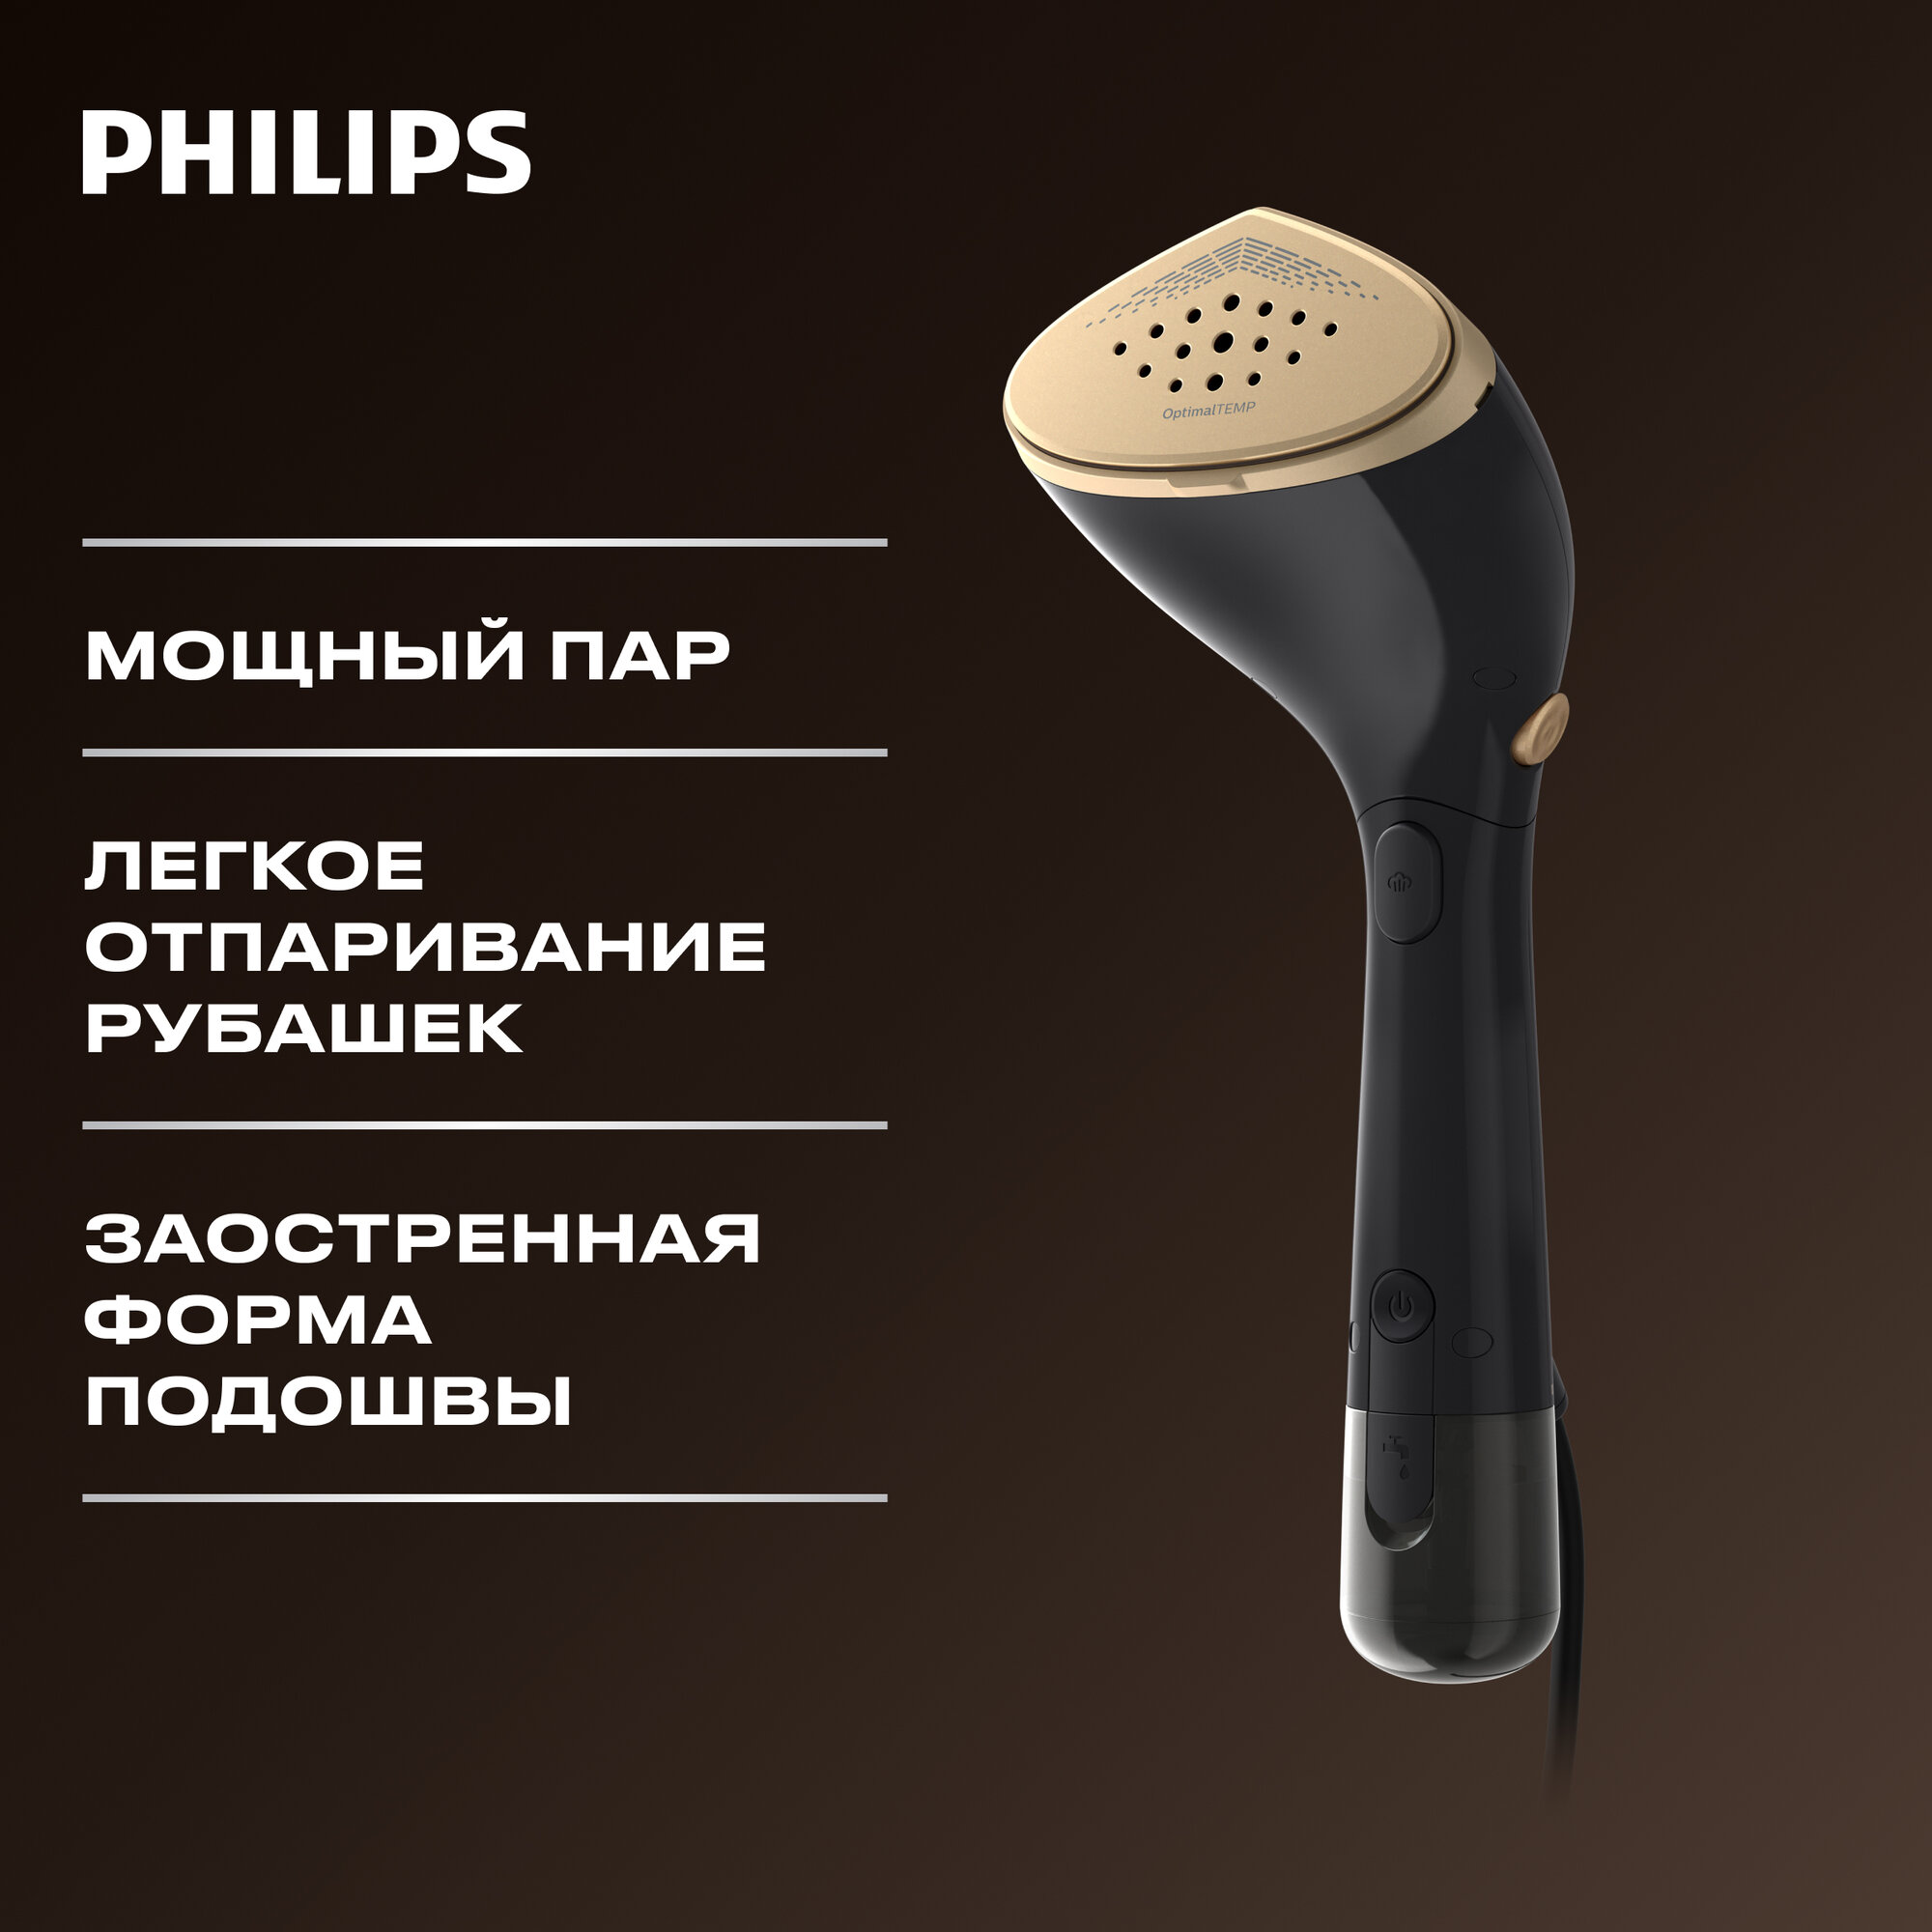 Ручной отпариватель Philips STH7060/80